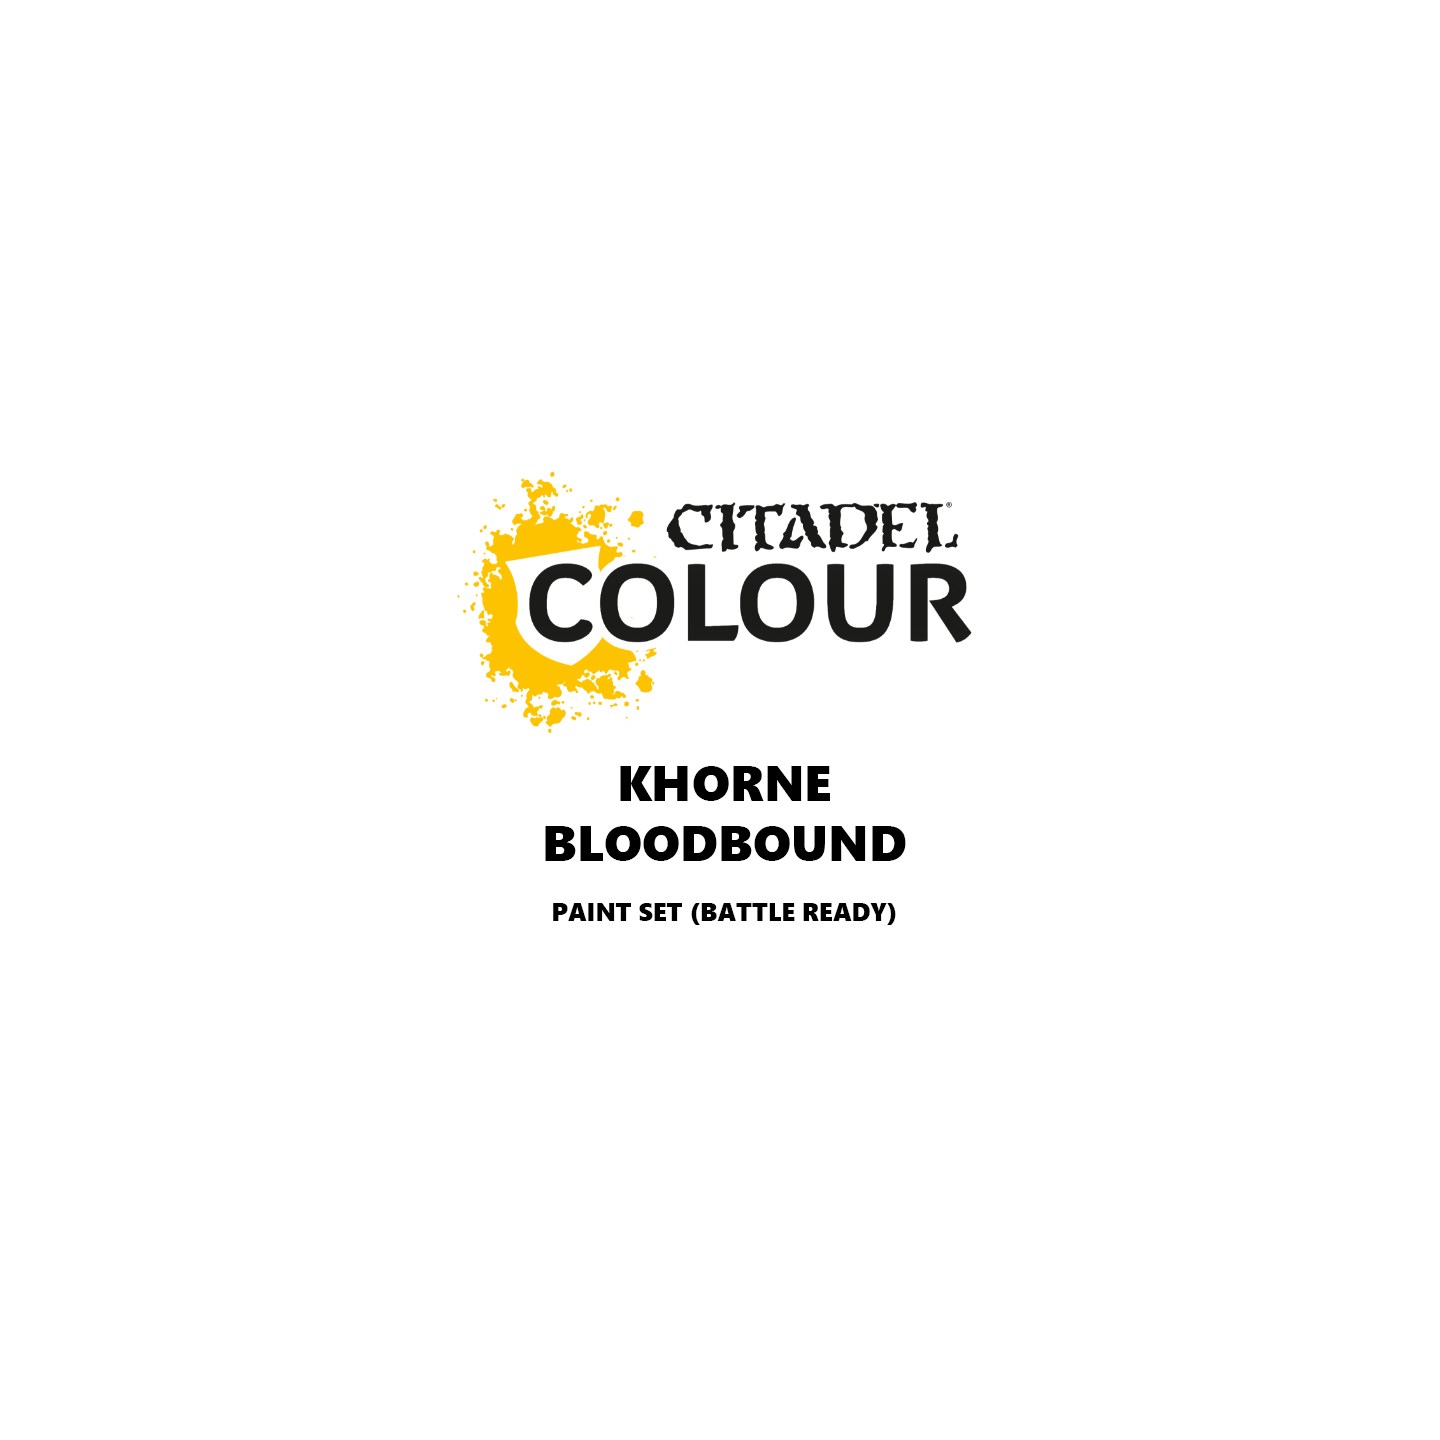 Khorne Bloodbound Paint Set Battle Ready Paint Set for din hær